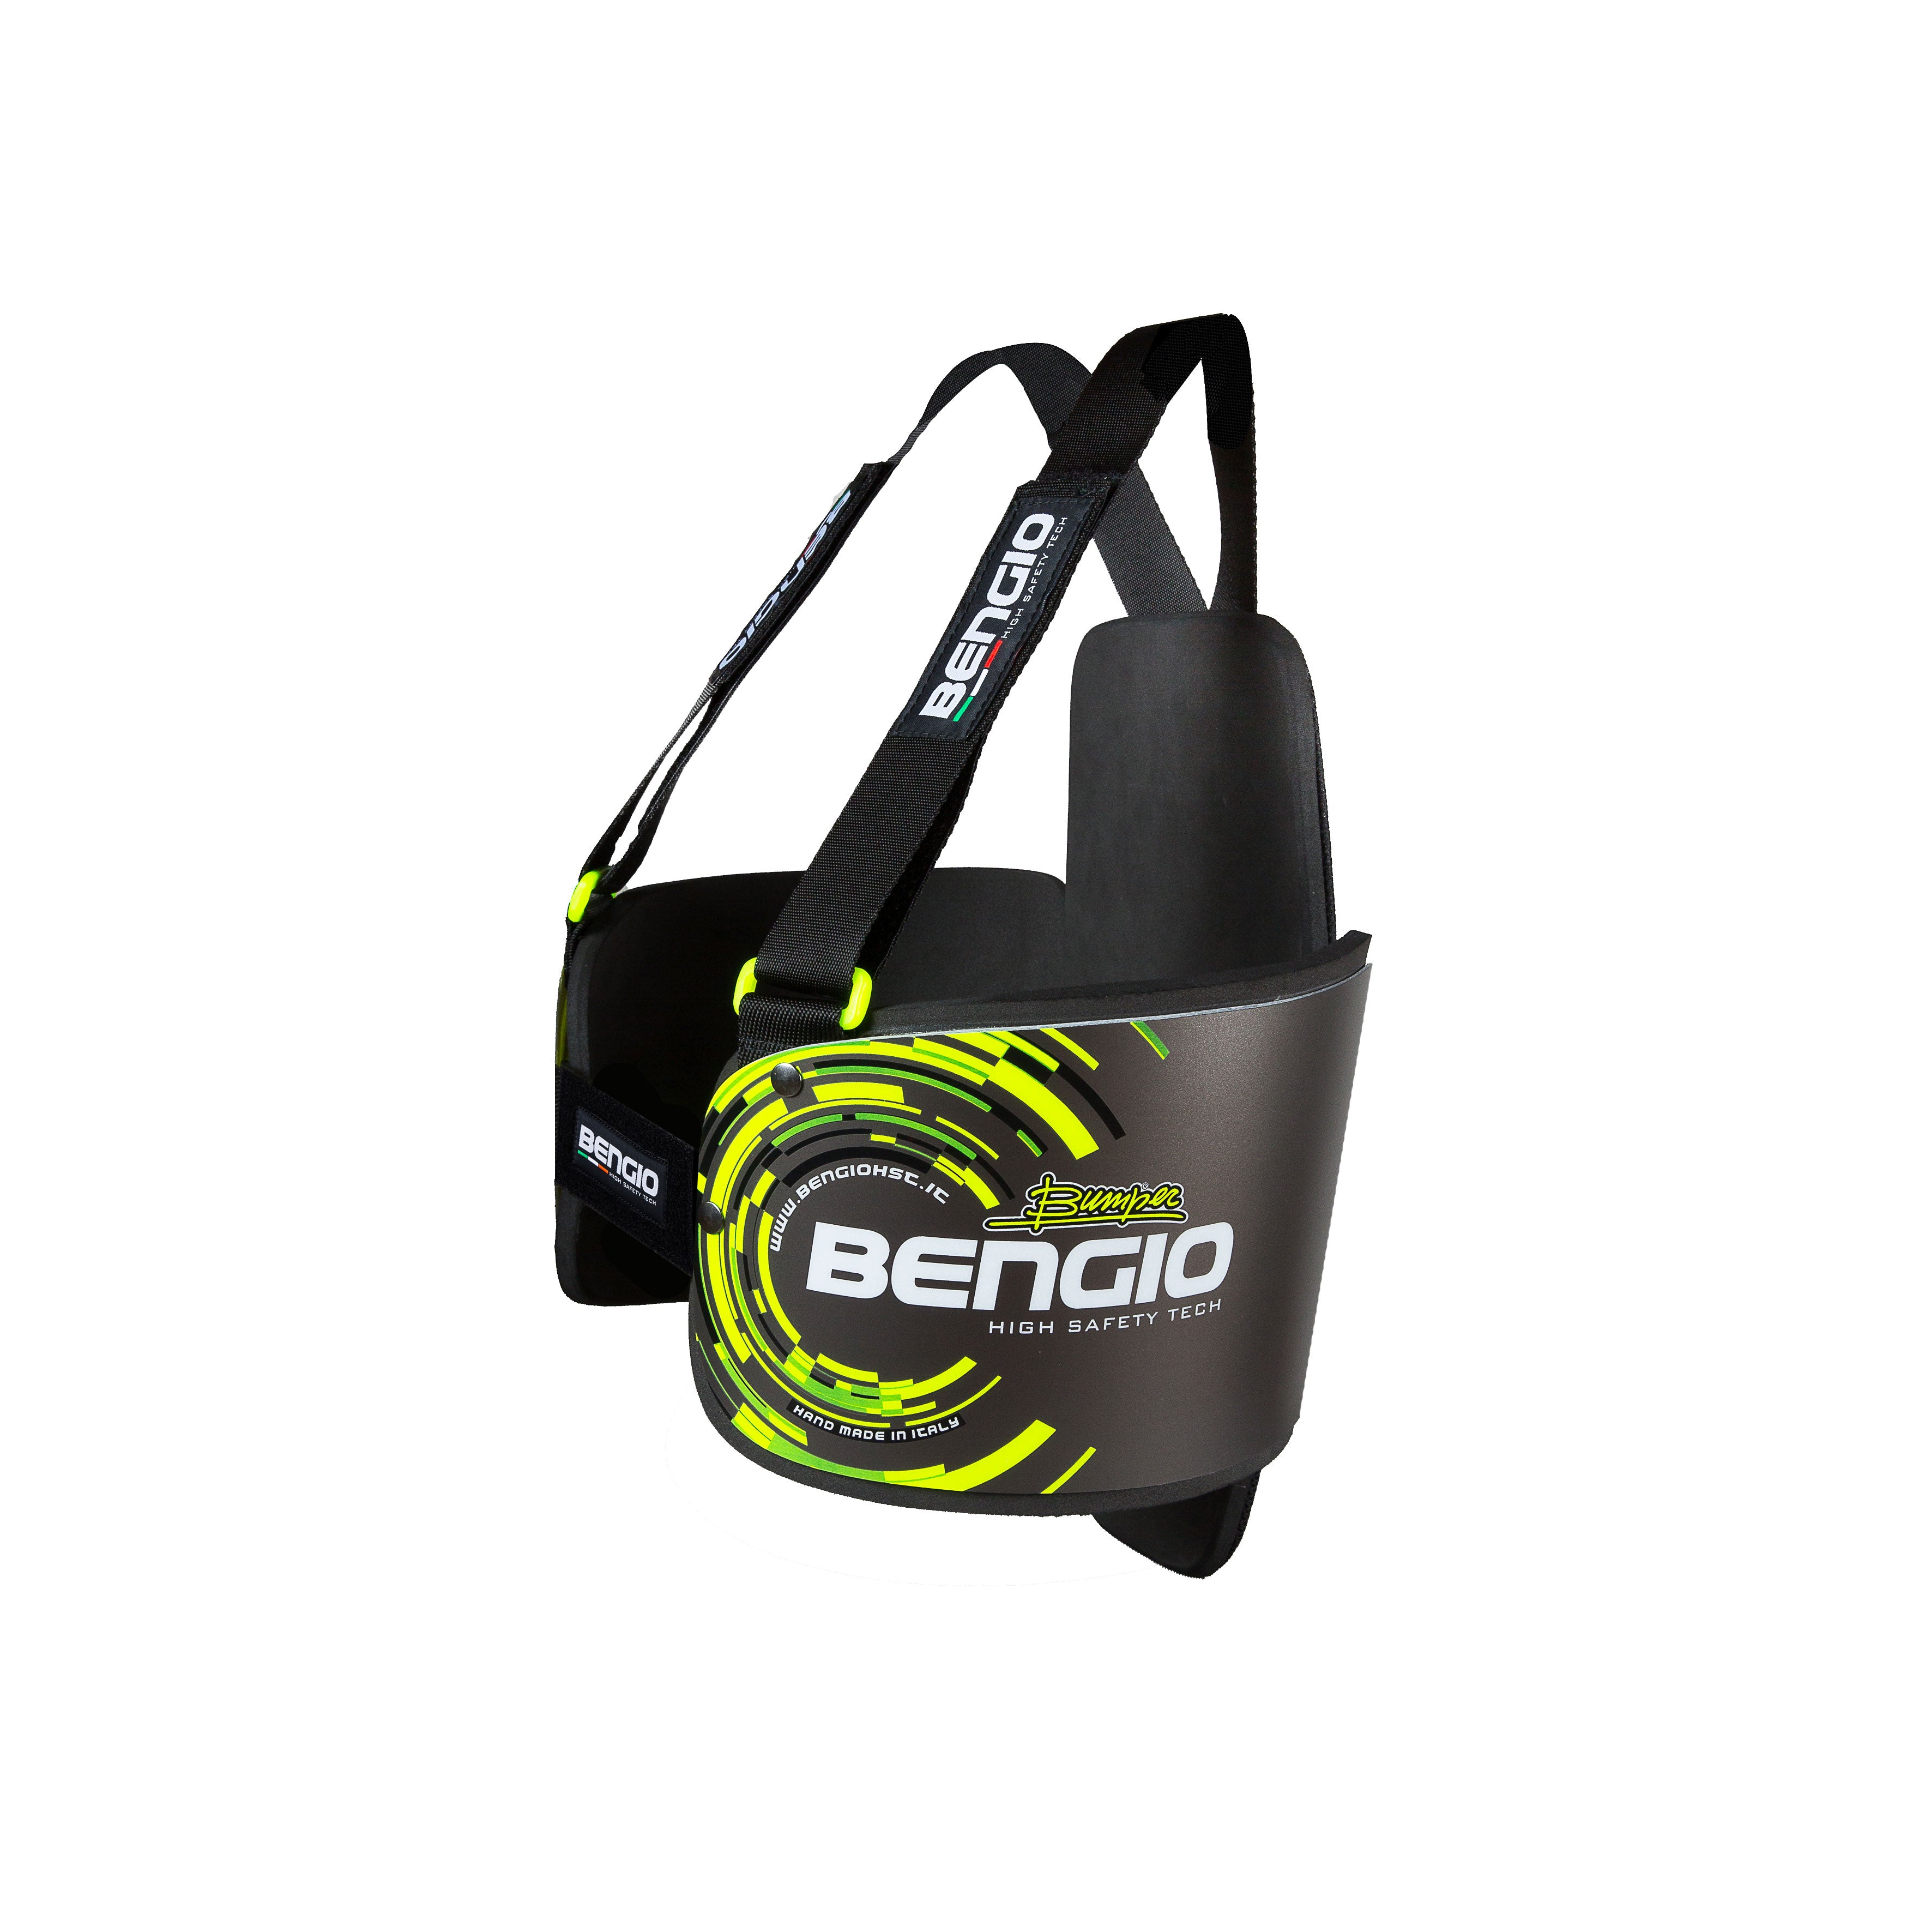 BENGIO STDPLSGY BUMPER Plus Захист ребер для картингу, сірий/флюор. жовтий, розмір S Photo-1 